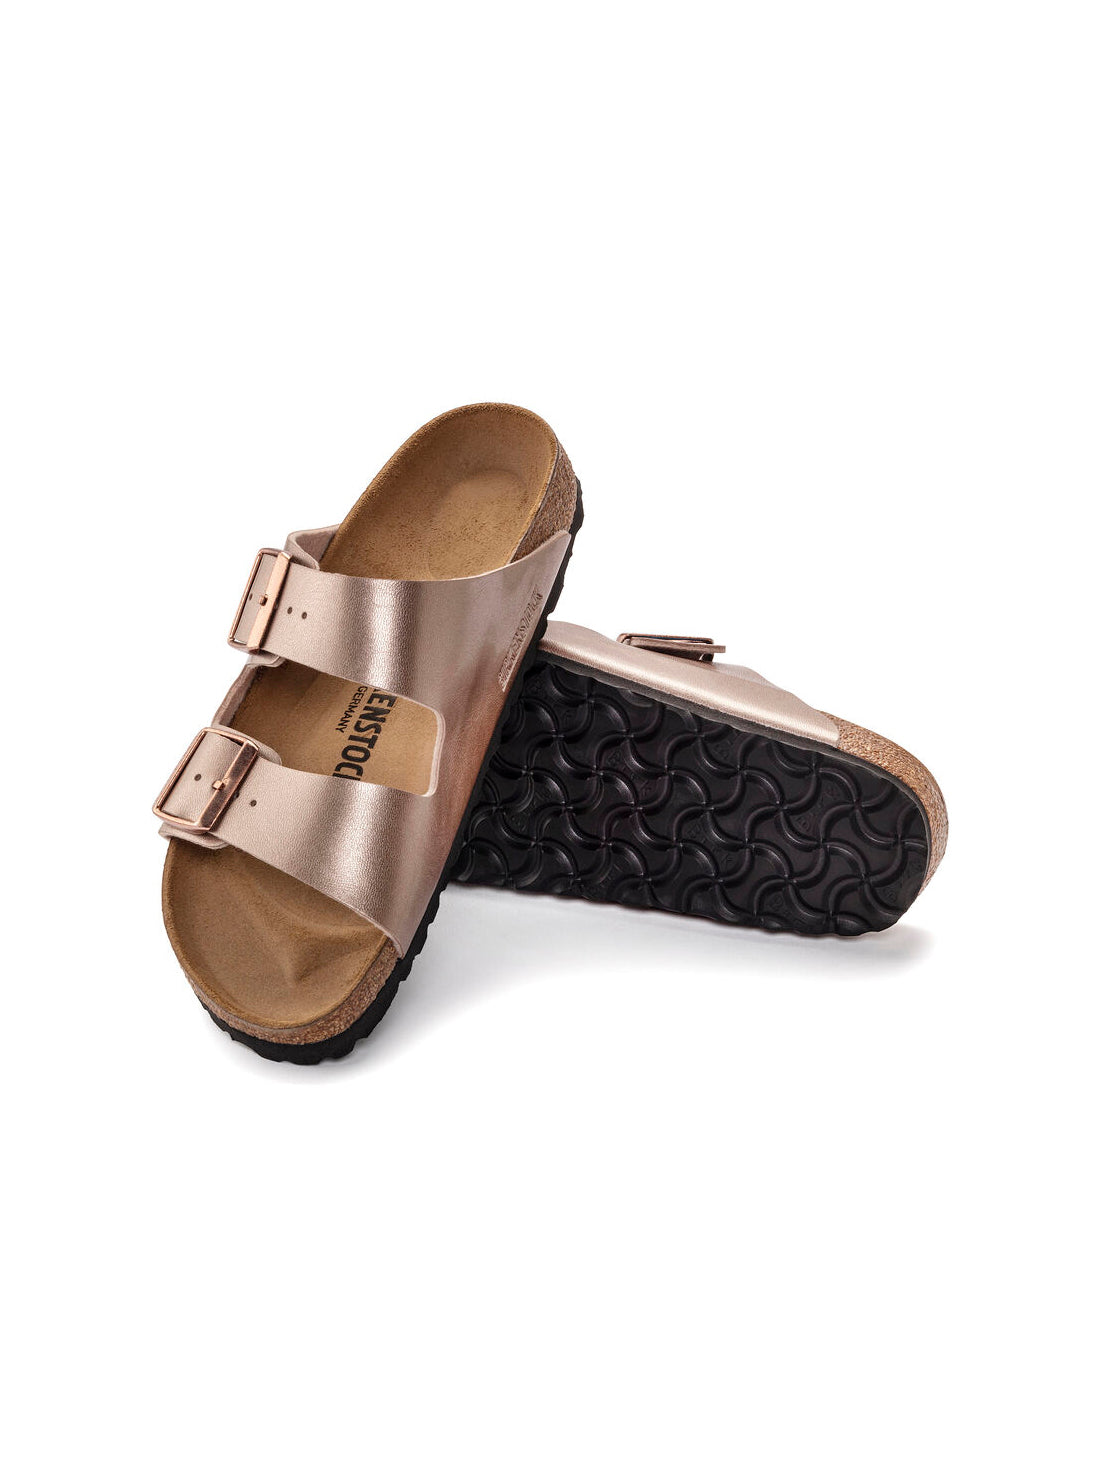 birkenstock arizona sandals in birko-flor copper regular